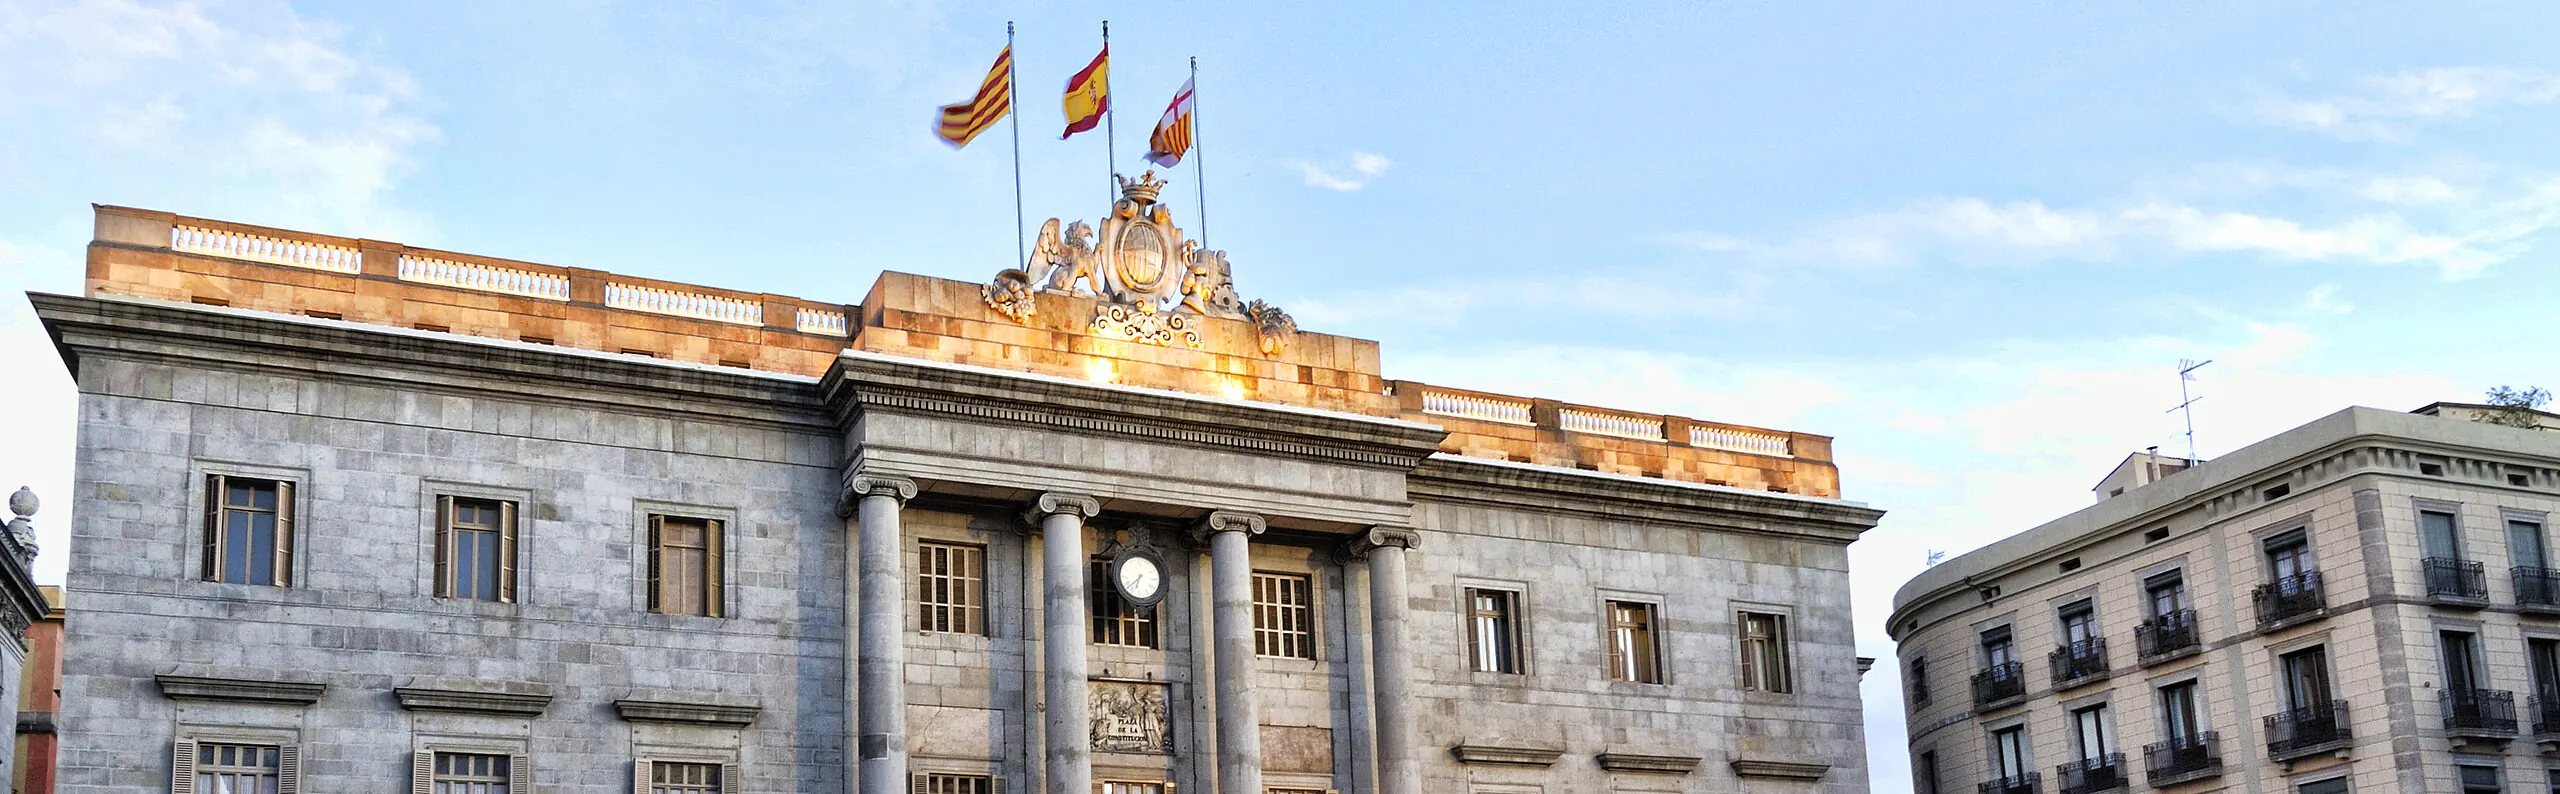 Cómo comunicar plagas al ayuntamiento de Barcelona